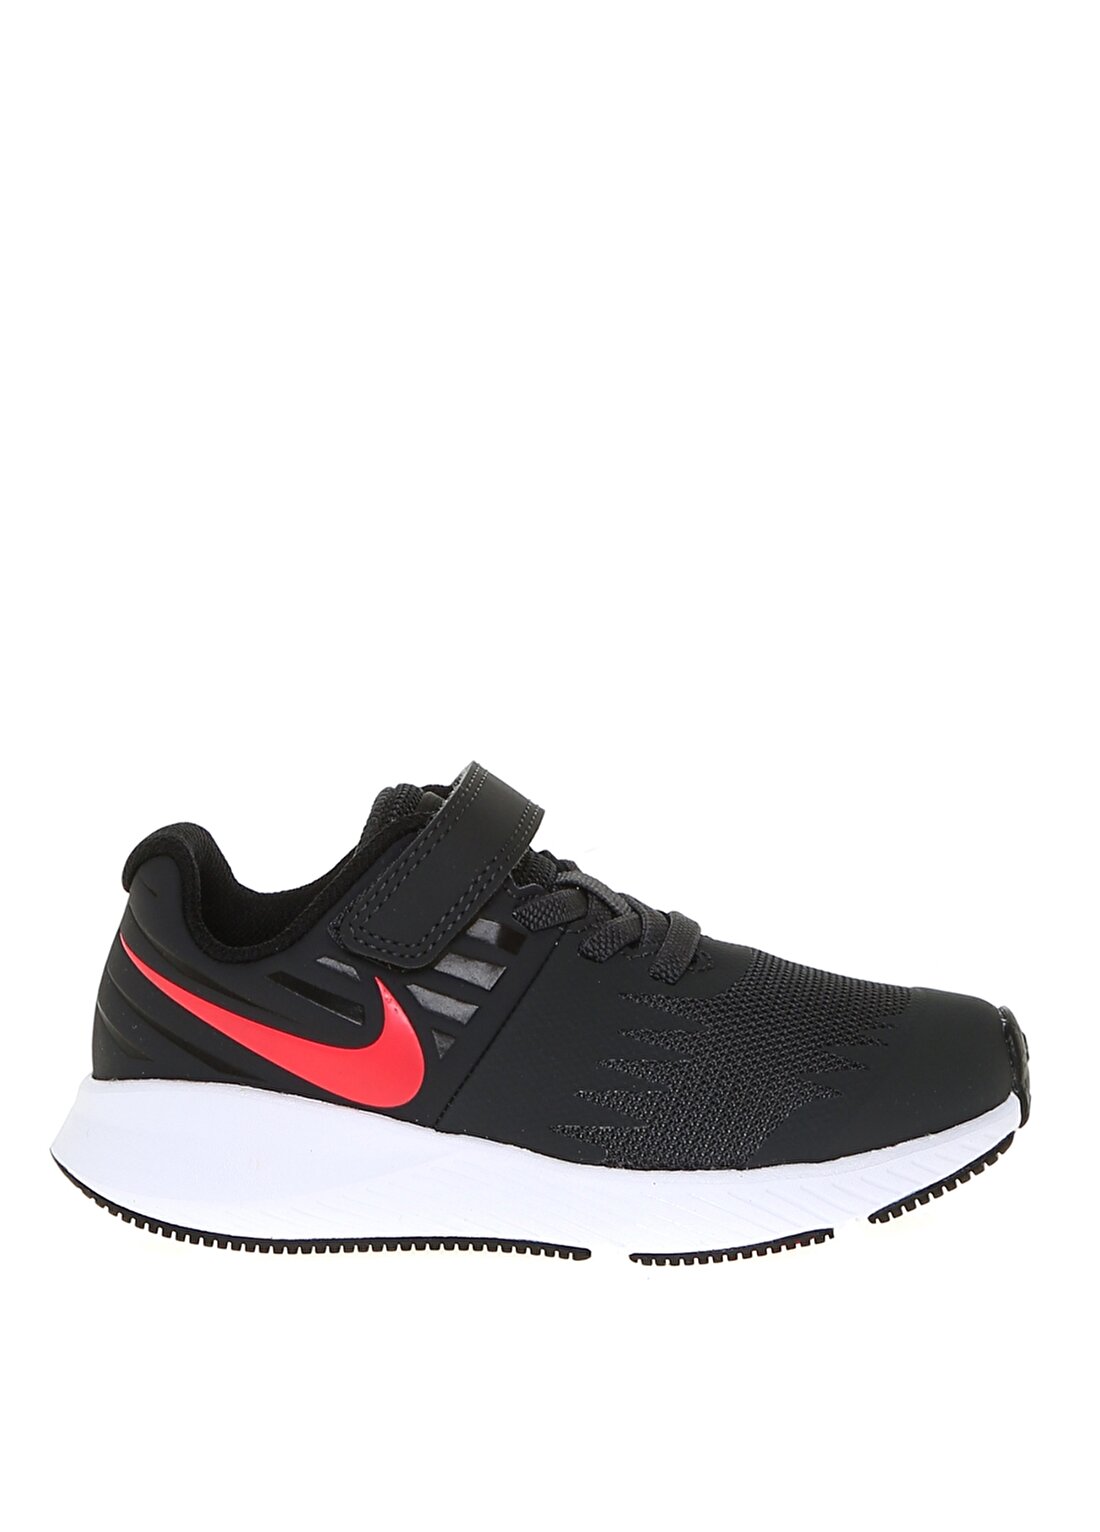 Nike Gri - Siyah Erkek Çocuk Yürüyüş Ayakkabısı